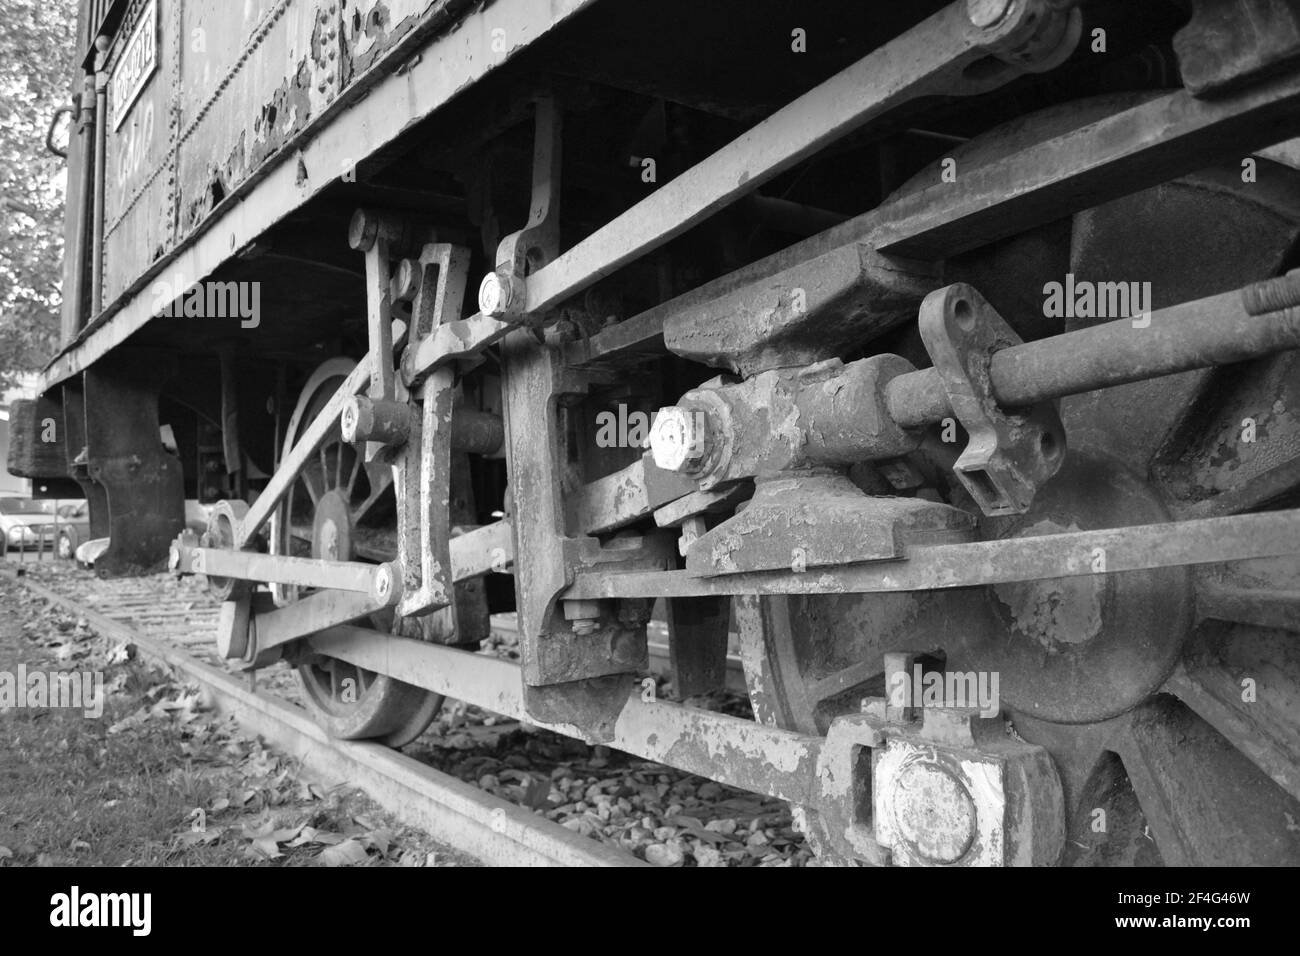 Alte Dampflokomotive im Córdoba Park. Andalucía, Spanien. Schwarz und Weiß. Rostige Dampfmaschine als Denkmal oder Dekoration im Córdoba Park hinterlassen. Düster. Stockfoto